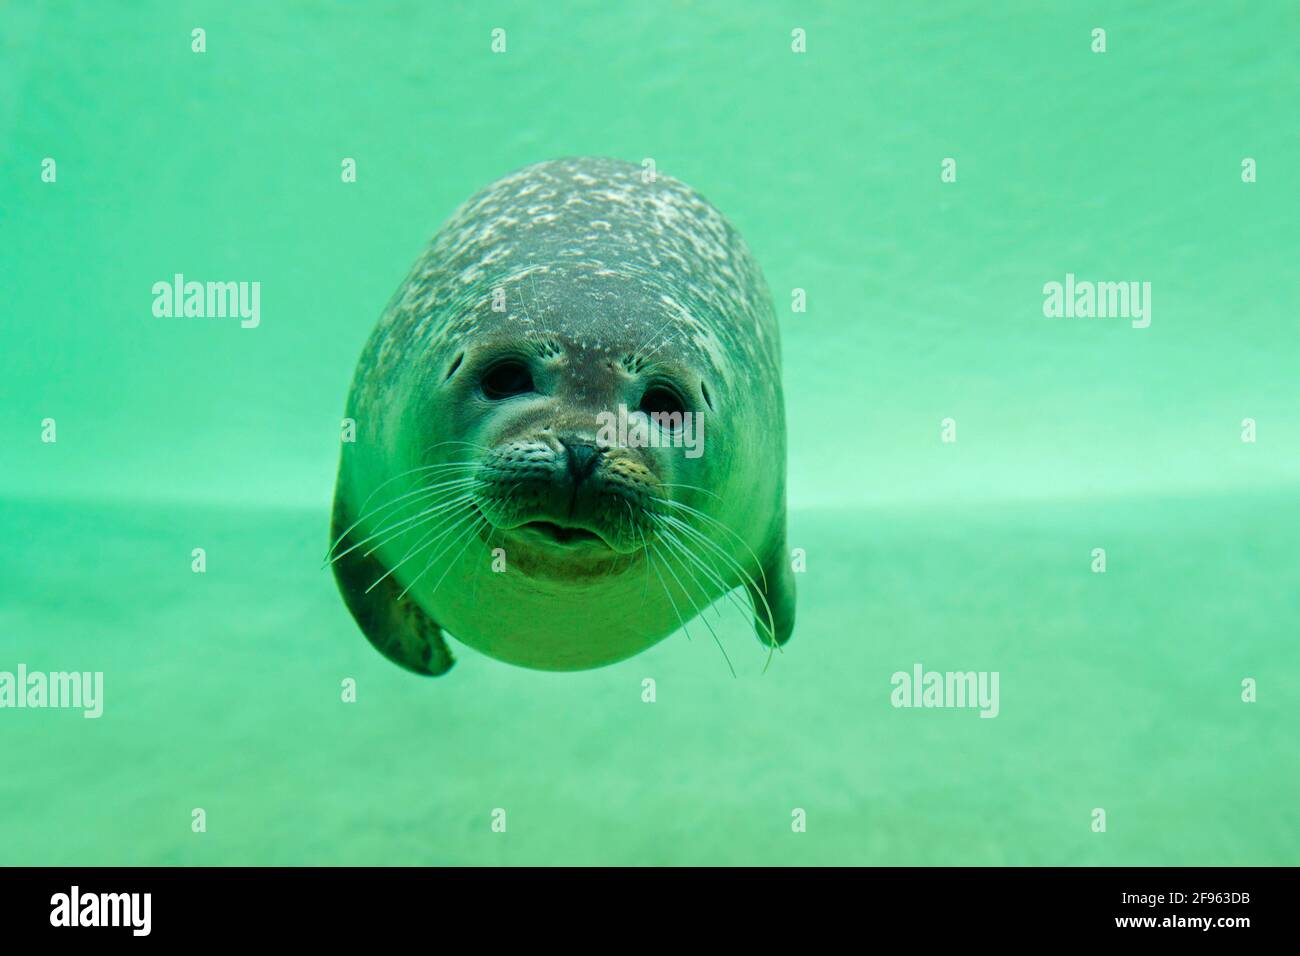 Phoque commun / phoque commun (Phoca vitulina) nageant sous l'eau dans un bassin au Seal Center / Seecentistation Friedrichskoog, Schleswig-Holstein, Allemagne Banque D'Images